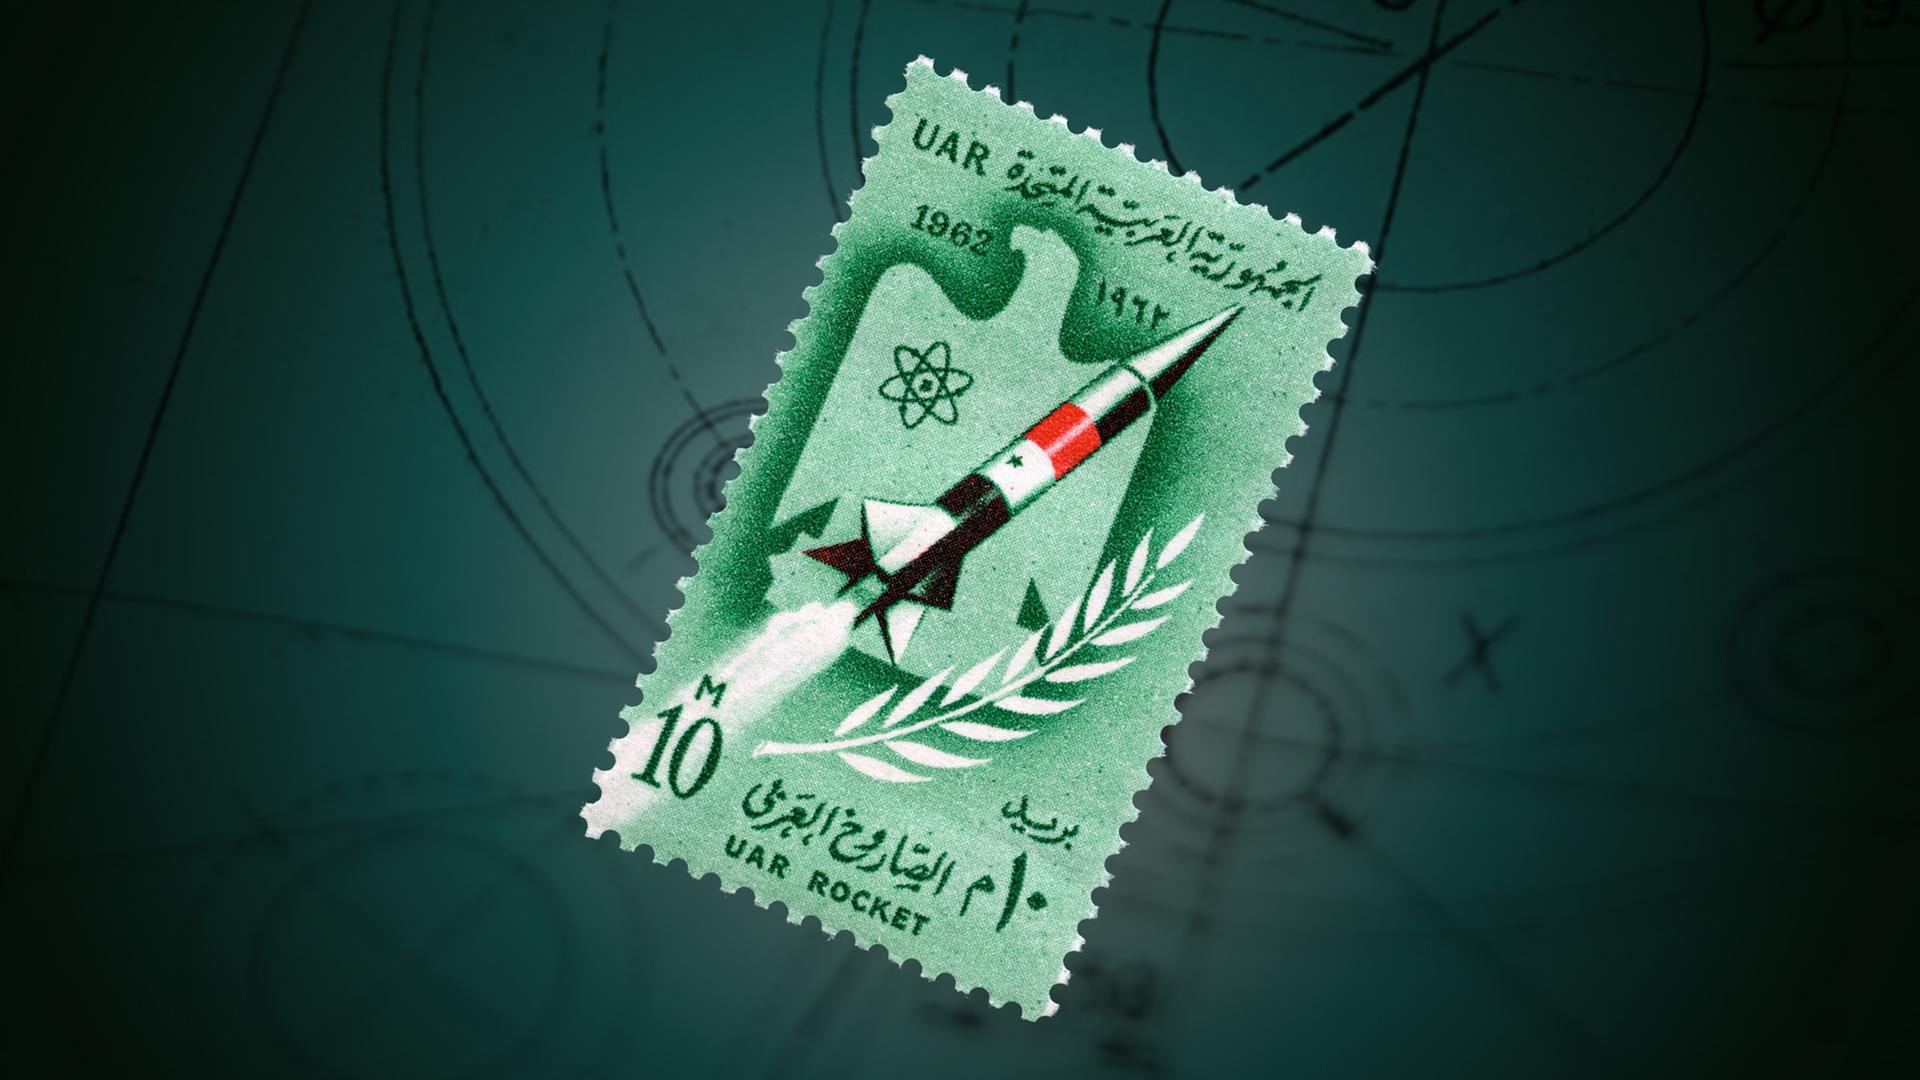 Eine Rakete auf einer Briefmarke vor grünem Hintergrund.